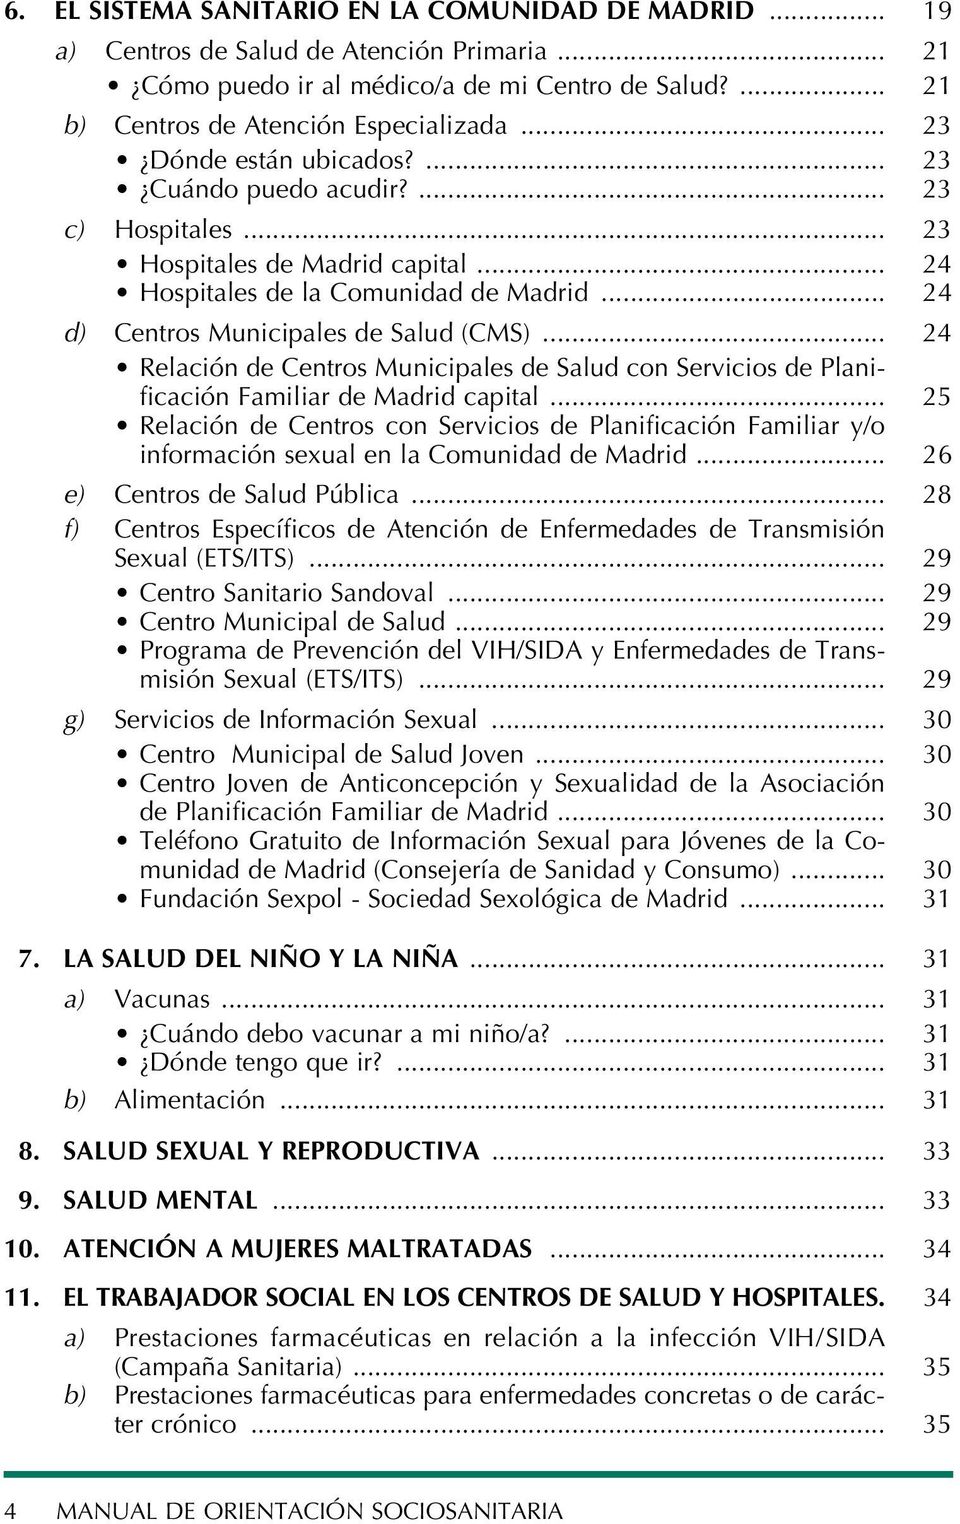 .. 24 Relación de Centros Municipales de Salud con Servicios de Planificación Familiar de Madrid capital.